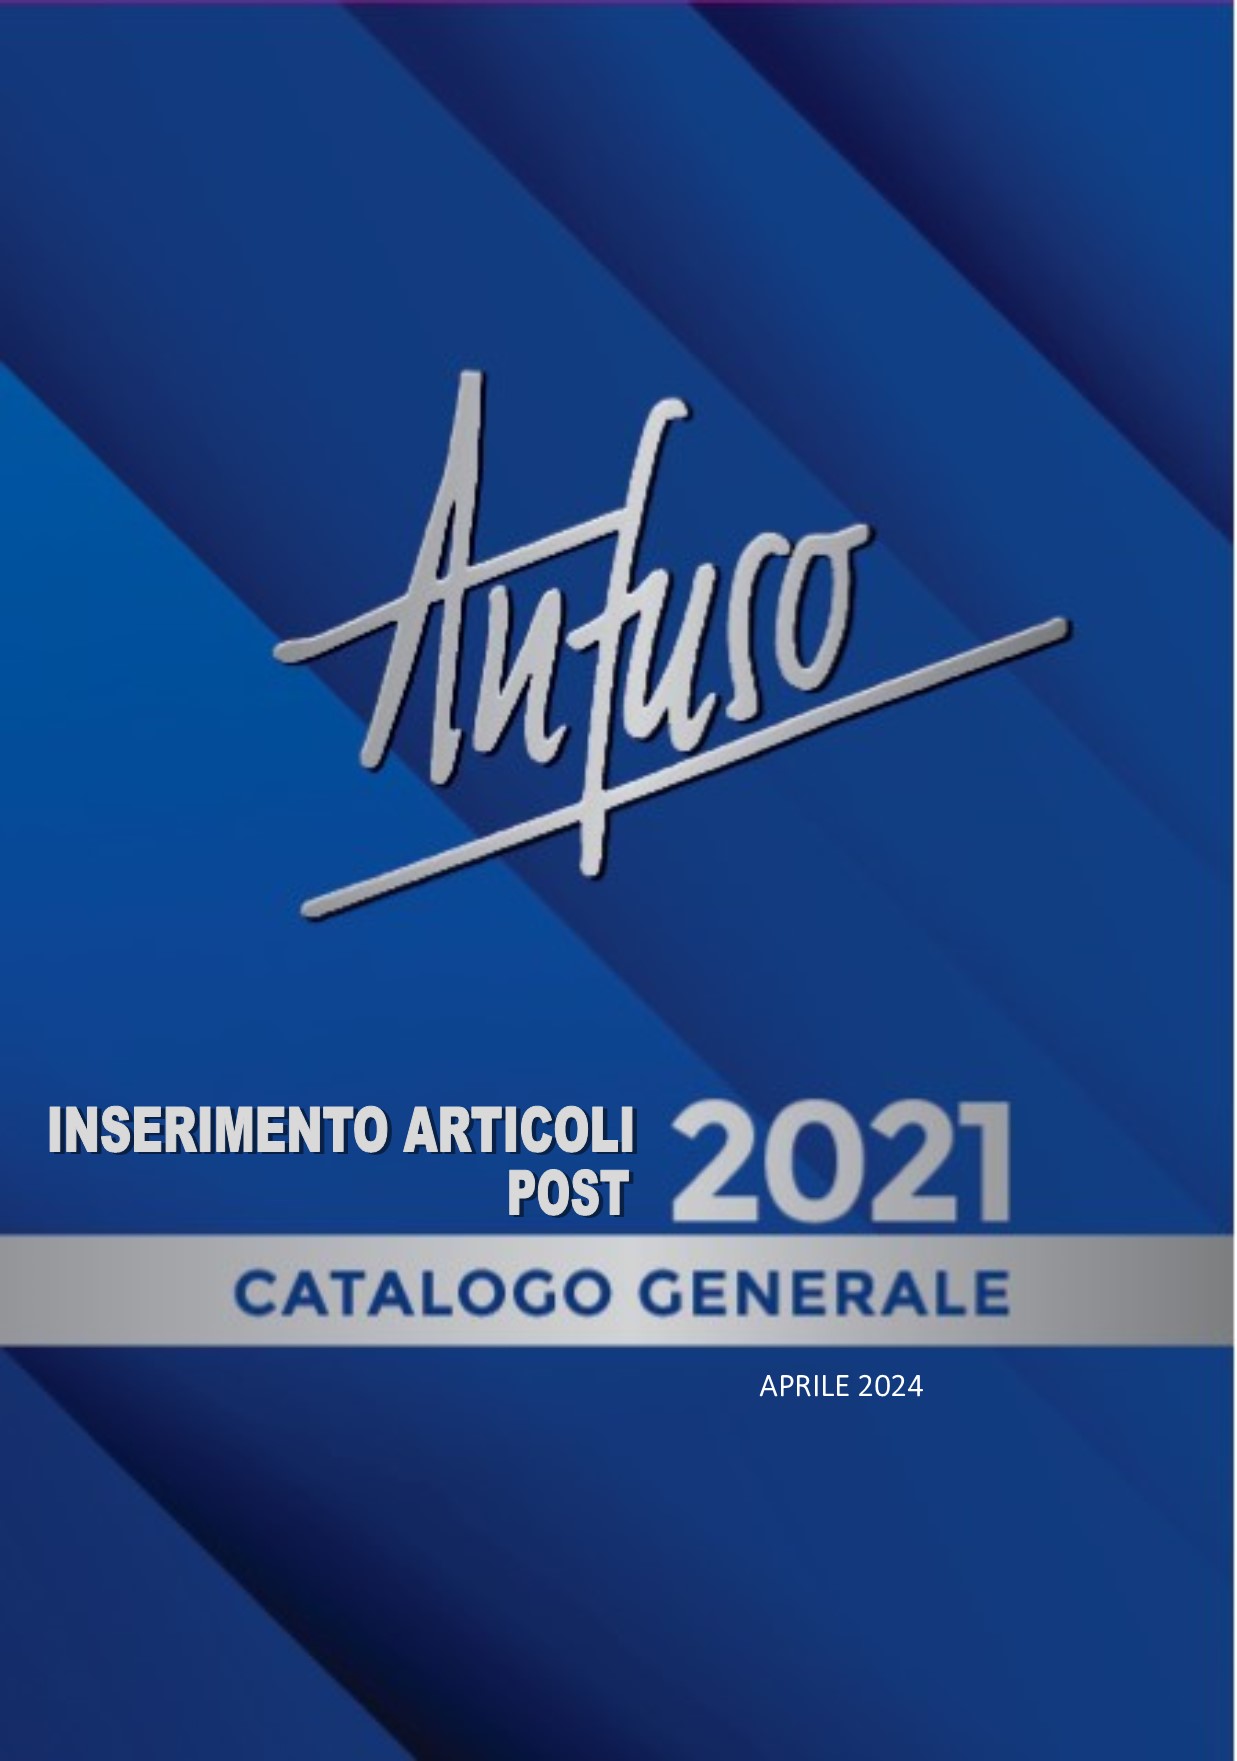  Inserimento Articoli post catalogo 2021 - APRILE 2024